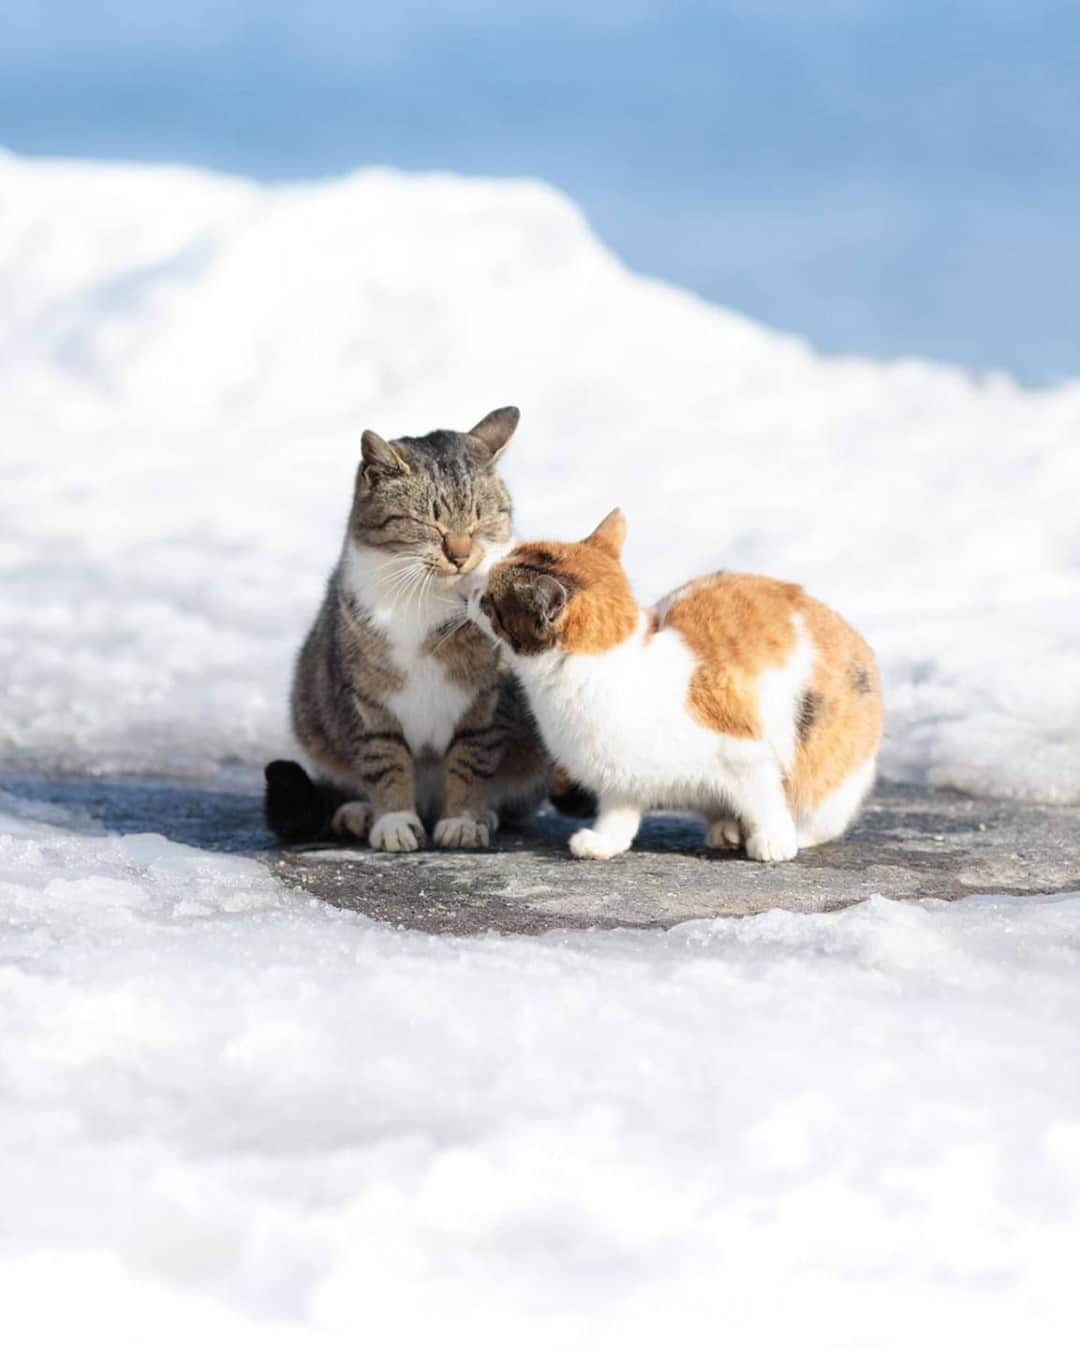 NEKOくらぶのインスタグラム：「| 三寒四温。⠀ @chikka_ism さんの作品ですにゃ（＝ΦωΦ＝）⠀ *⠀ いいね！＆コメント大歓迎！！⠀ *⠀ #nekoclub #NEKOくらぶ #Japan #Photo #写真 #日本 #cat #ネコ #ねこ #猫 ⠀ Follow: @nekoclub_jpn⠀ *⠀ ▼【廣済堂出版共同企画】NEKOくらぶの皆さまとつくる「NEKOくらぶ写真集」、発売中♪（＝ΦωΦ＝）⠀ ※詳細は本アカウント「 @nekoclub_jpn 」のプロフィールに固定しているハイライトから⠀ *⠀ ※当アカウントでシェアさせていただいた作品は、東京カメラ部YouTubeアカウントでも投稿者様のお名前入りでご紹介させていただく場合があります。これらの使用に関して原則通知は行いませんので、予めご了承ください。⠀ ※皆様、政府、自治体など公的機関の指示に従った行動をお願いします。⠀ 東京カメラ部および分室では、写真を「見る楽しみ」を提供することを通して、微力ながら皆様にわずかな時間でも癒しをお届けしたいと思っております。⠀ ※本アカウントは東京カメラ部がFacebook、Instagramのサービスを利用して運営しているもので、Facebook社・Instagramとは一切関係ありません。」